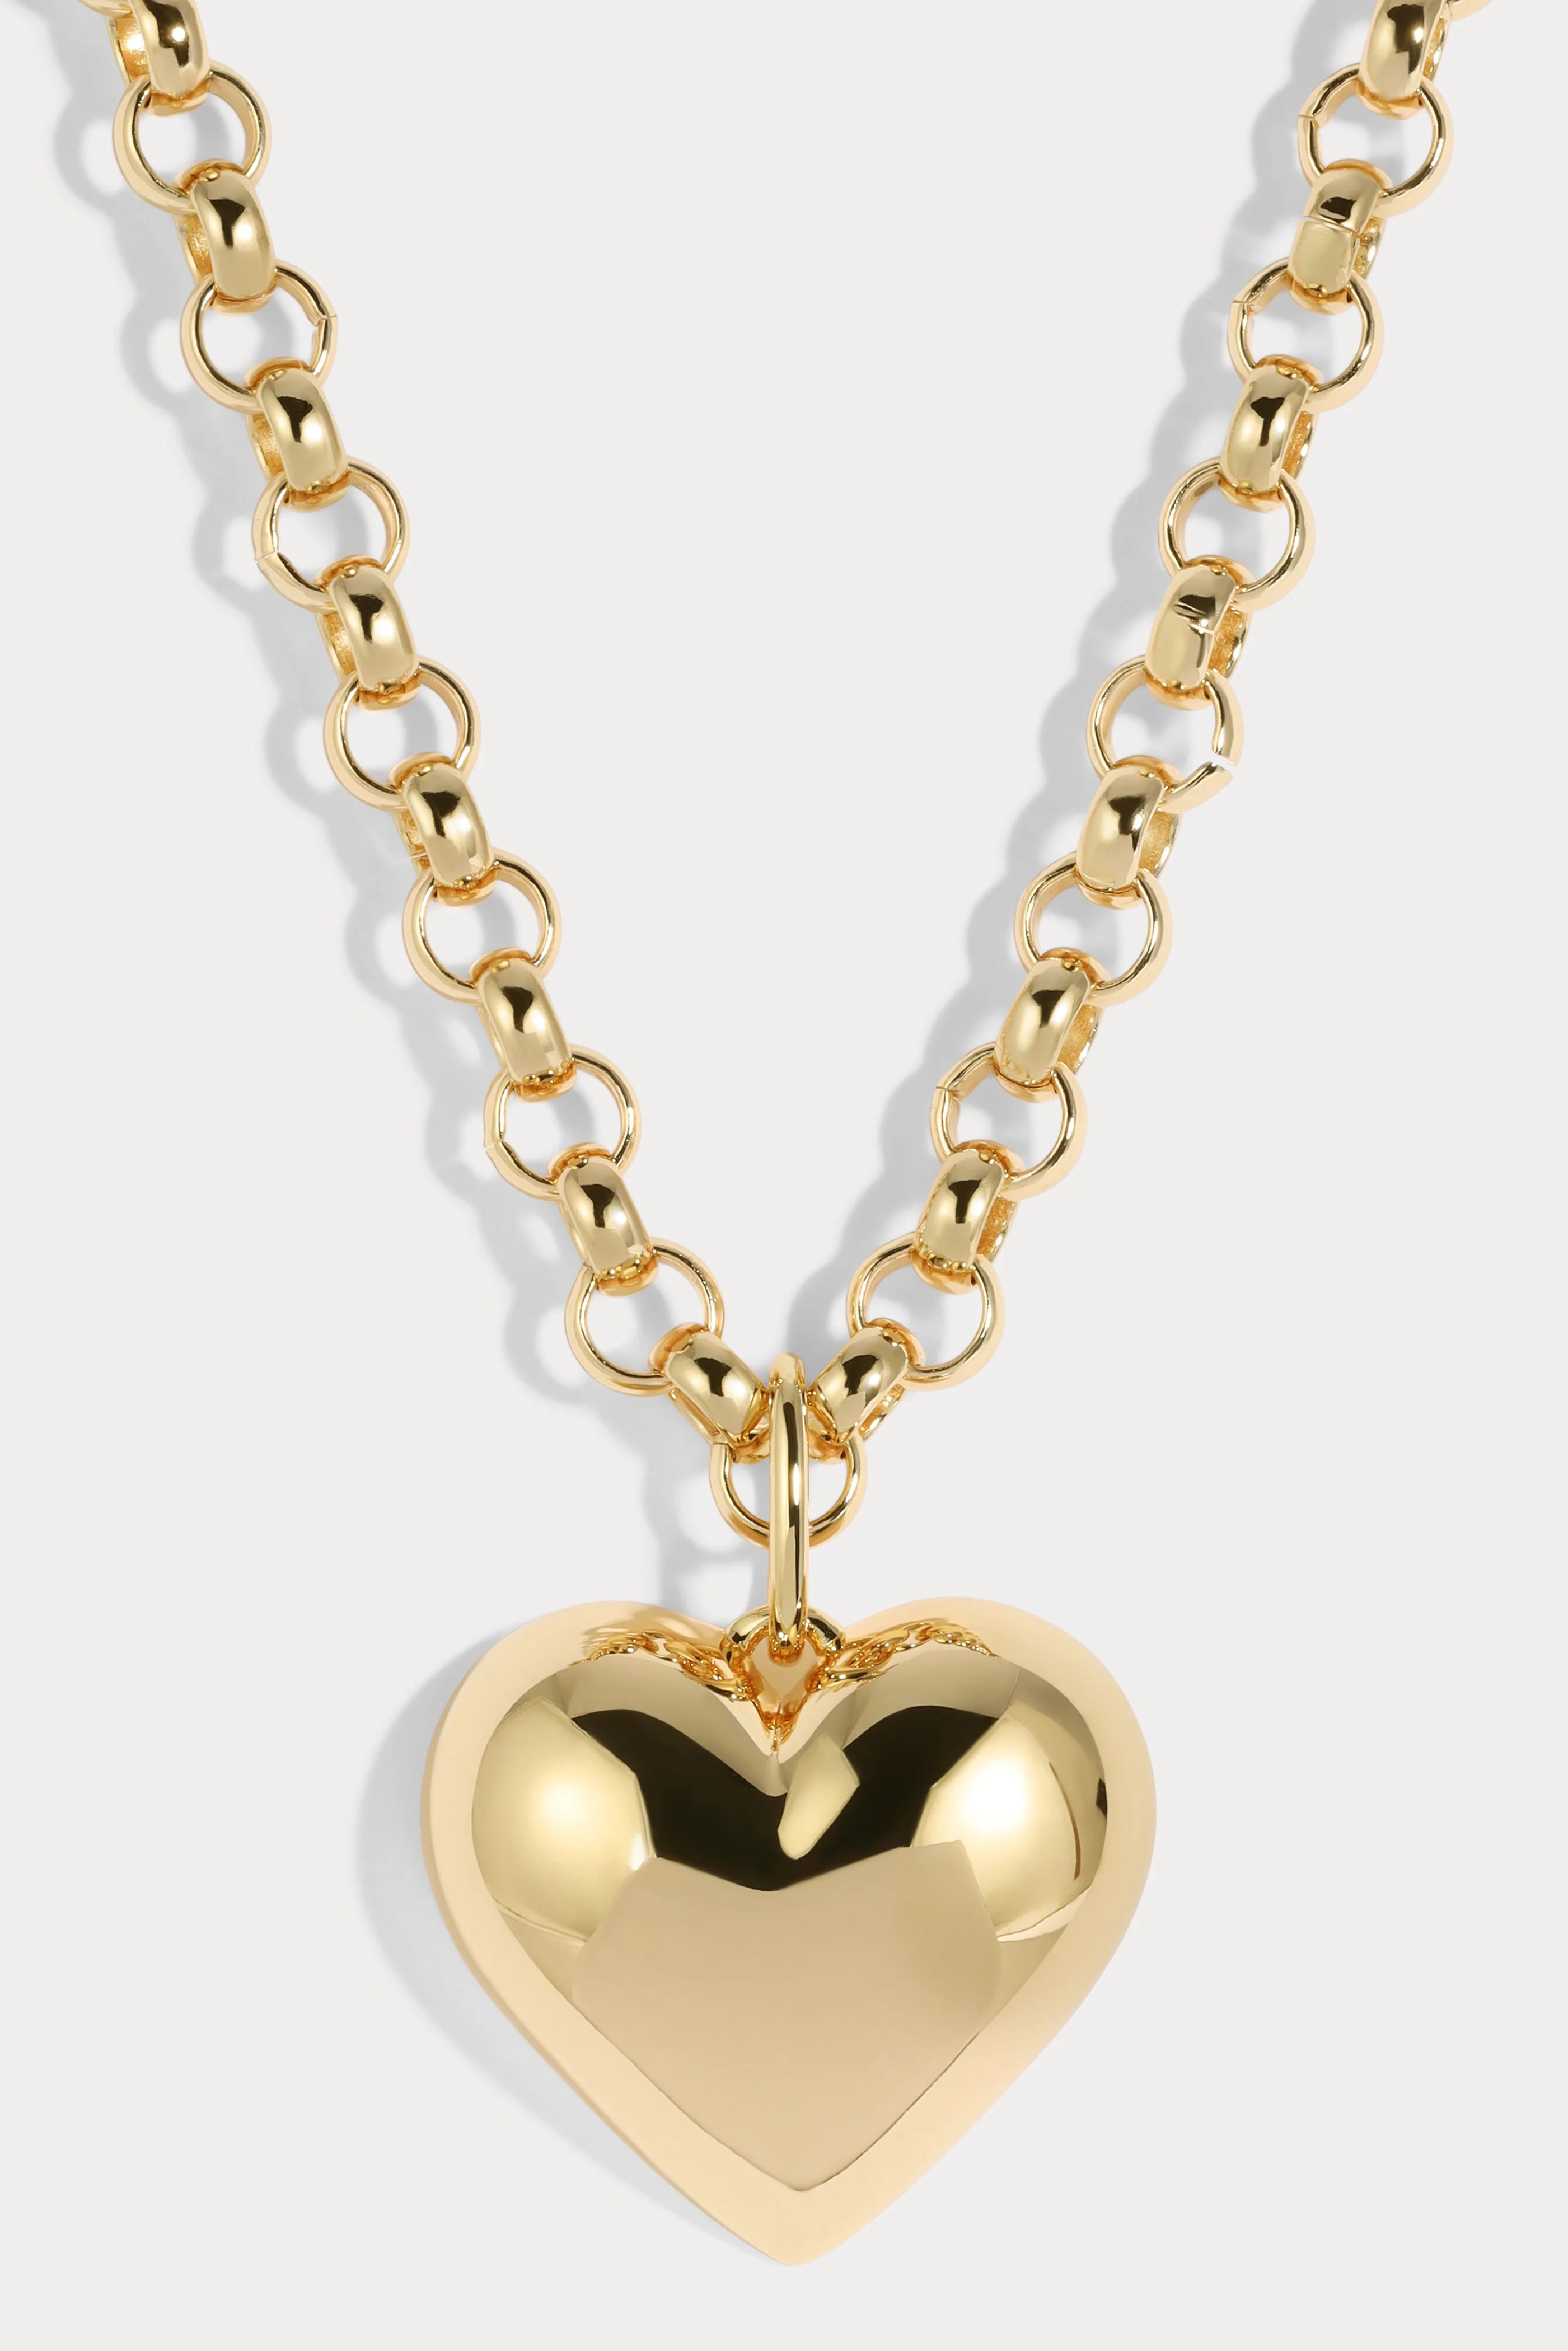 Bubble Heart Necklace | Lili Claspe